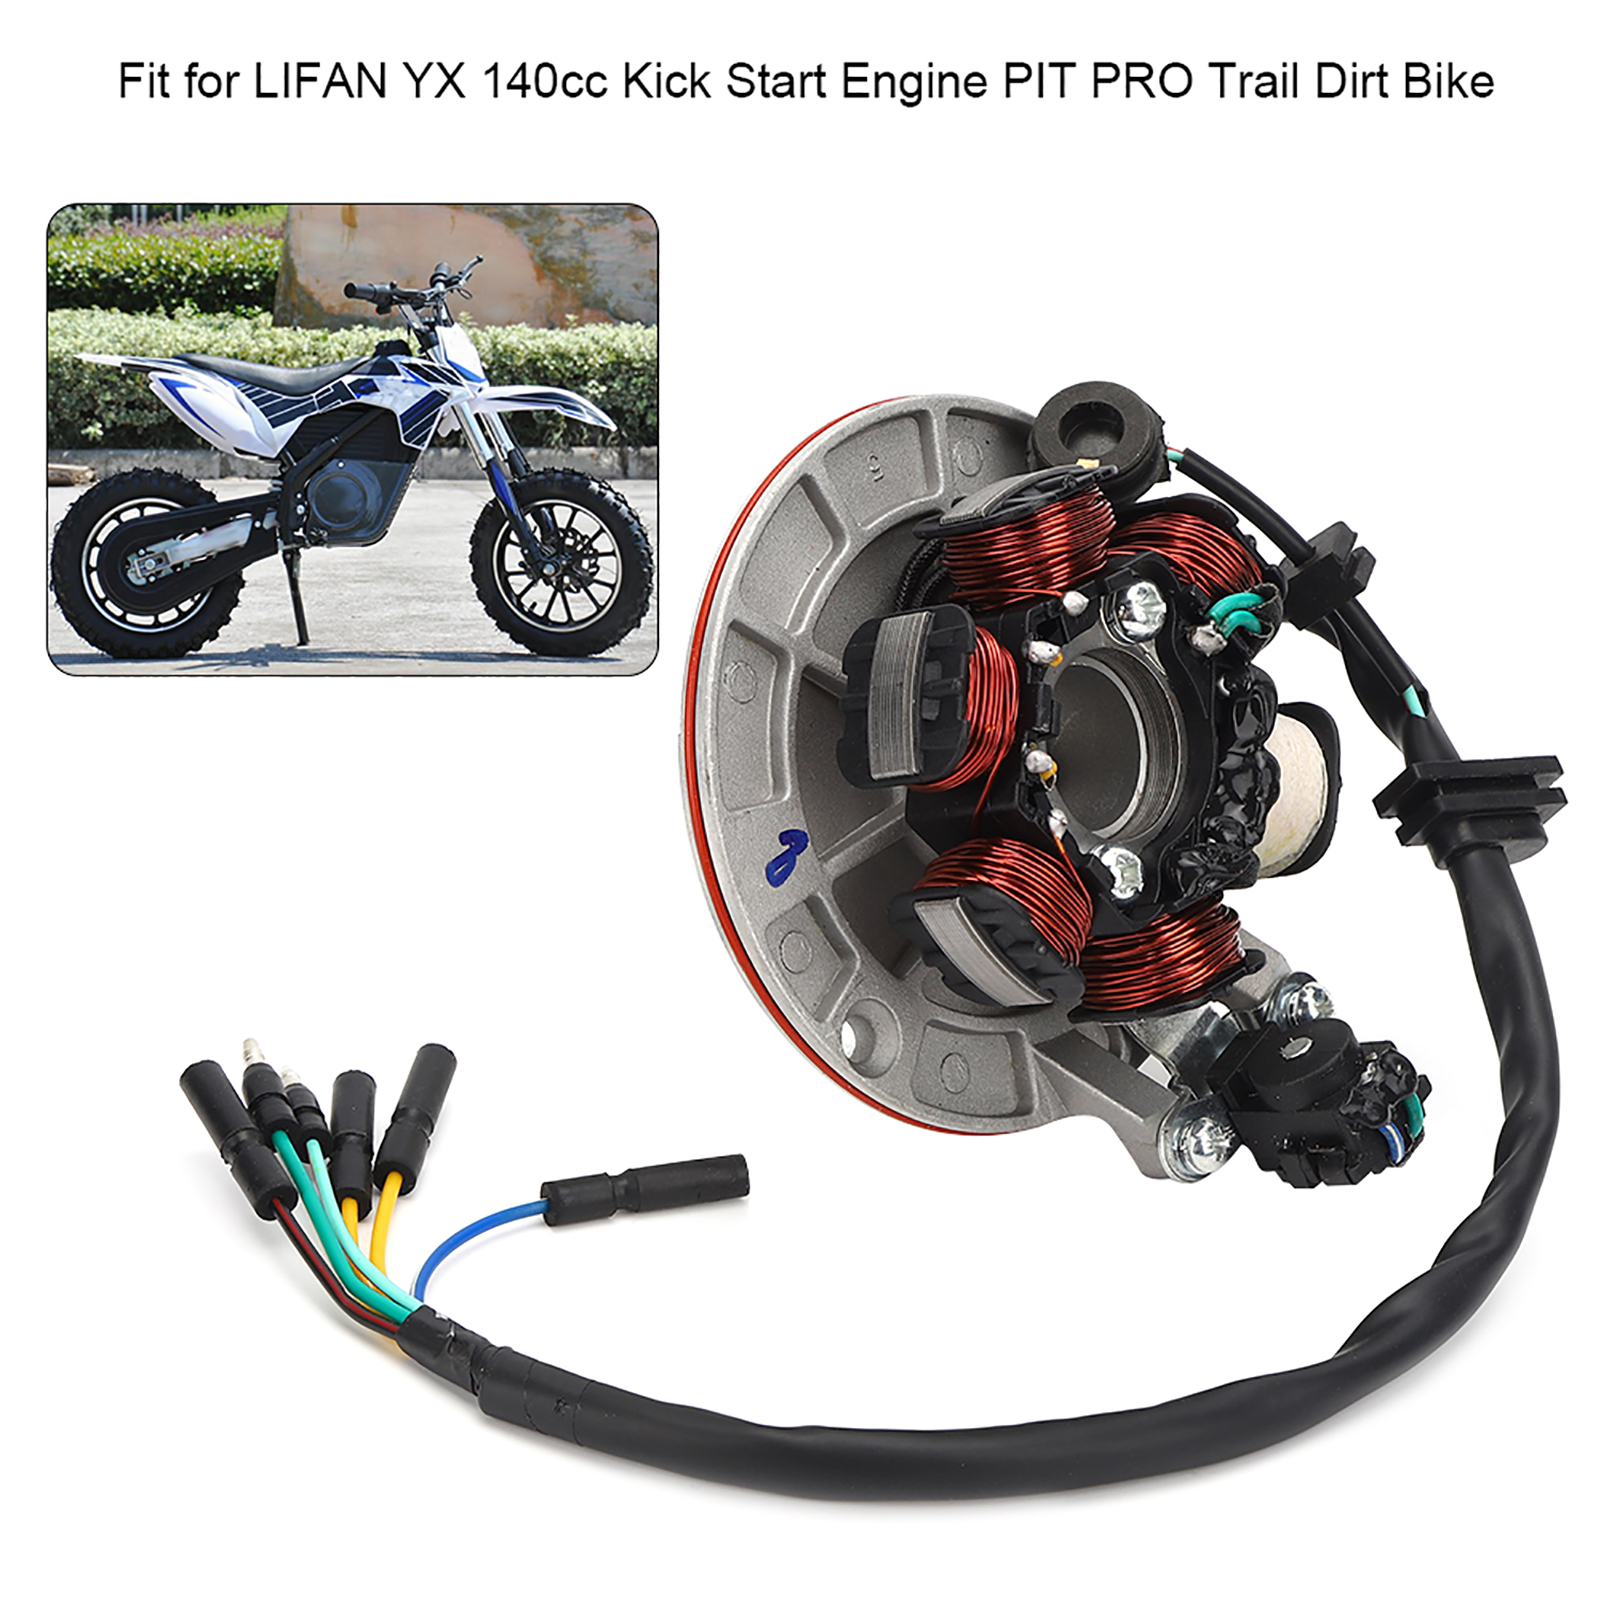 Xtato từ tấm phù hợp cho Lifan YX 140cc động cơ khởi động máy Pit Pro Trail Dirt Bike